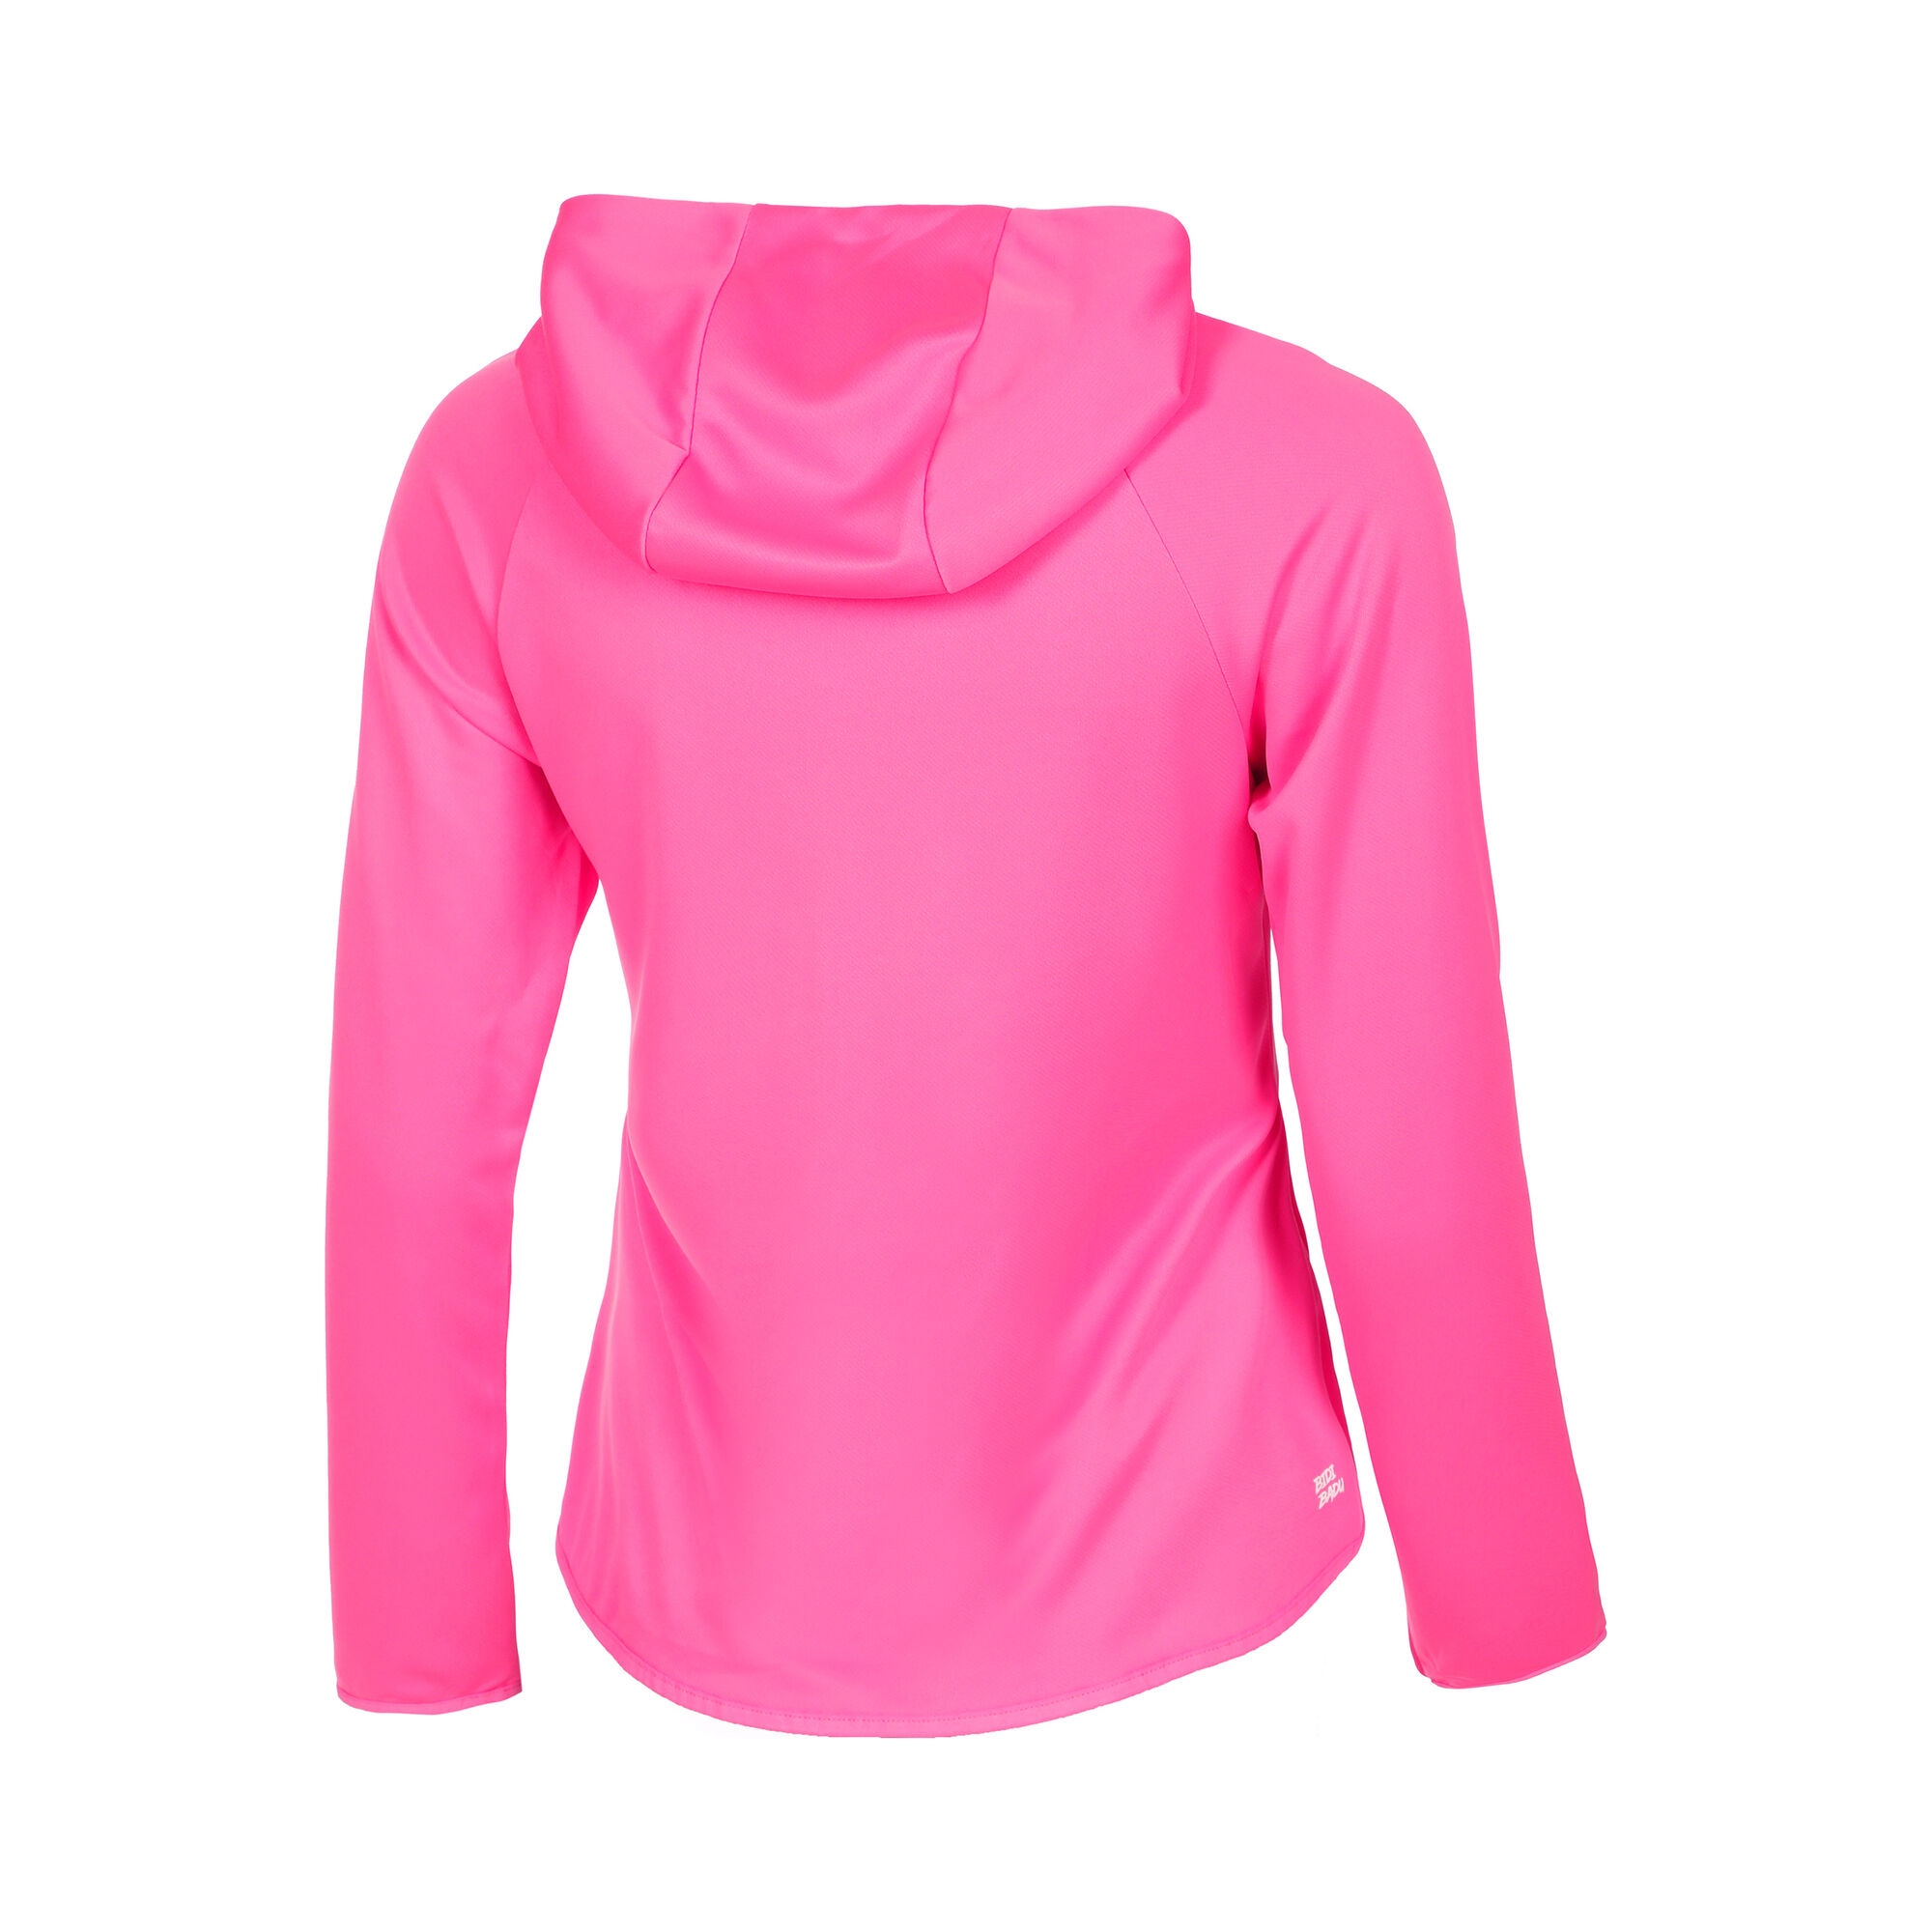 BIDI BADU Crew Trainingsjacke Mädchen Pink online kaufen | Tennis Point DE